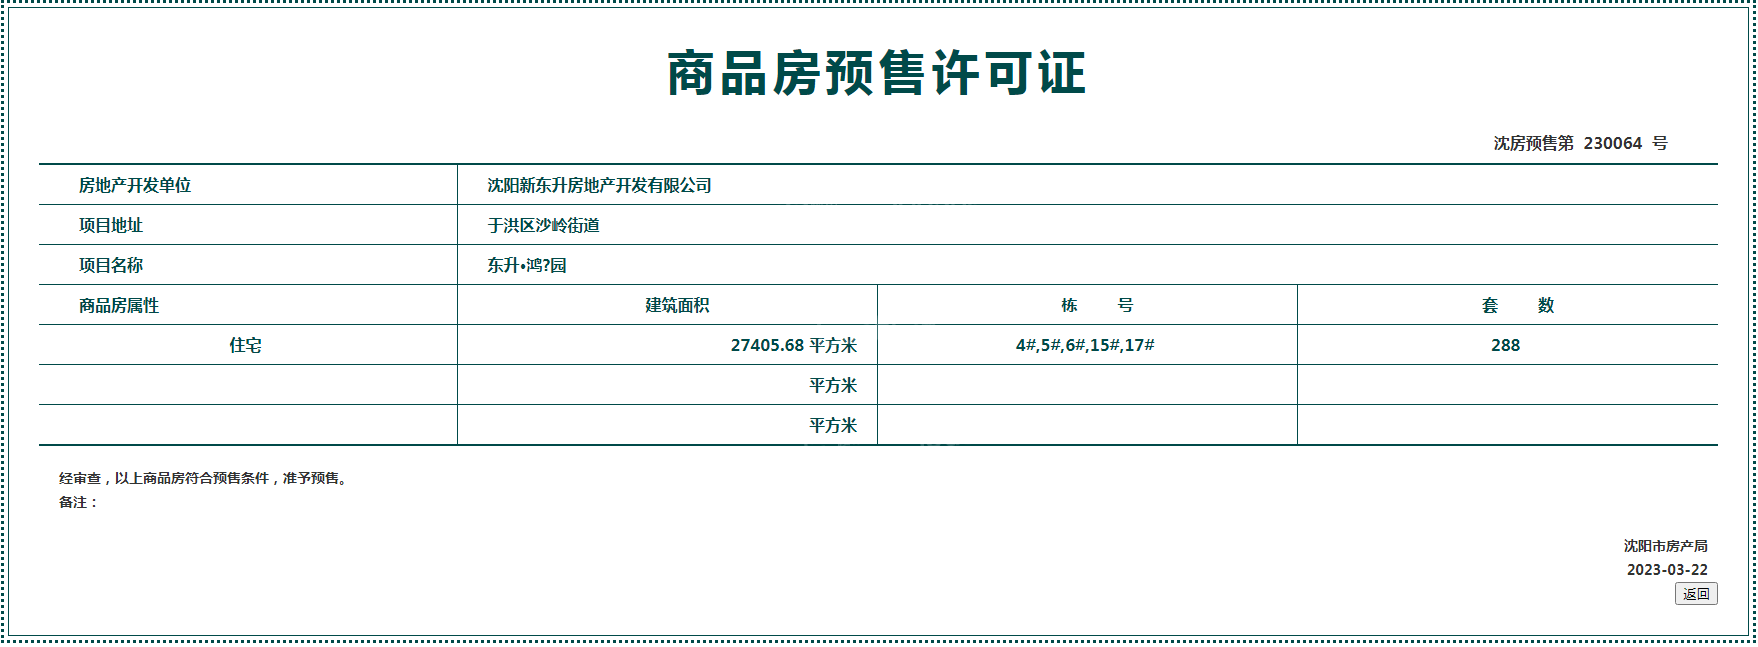 东升鸿璟园项目3月取得最新预售证